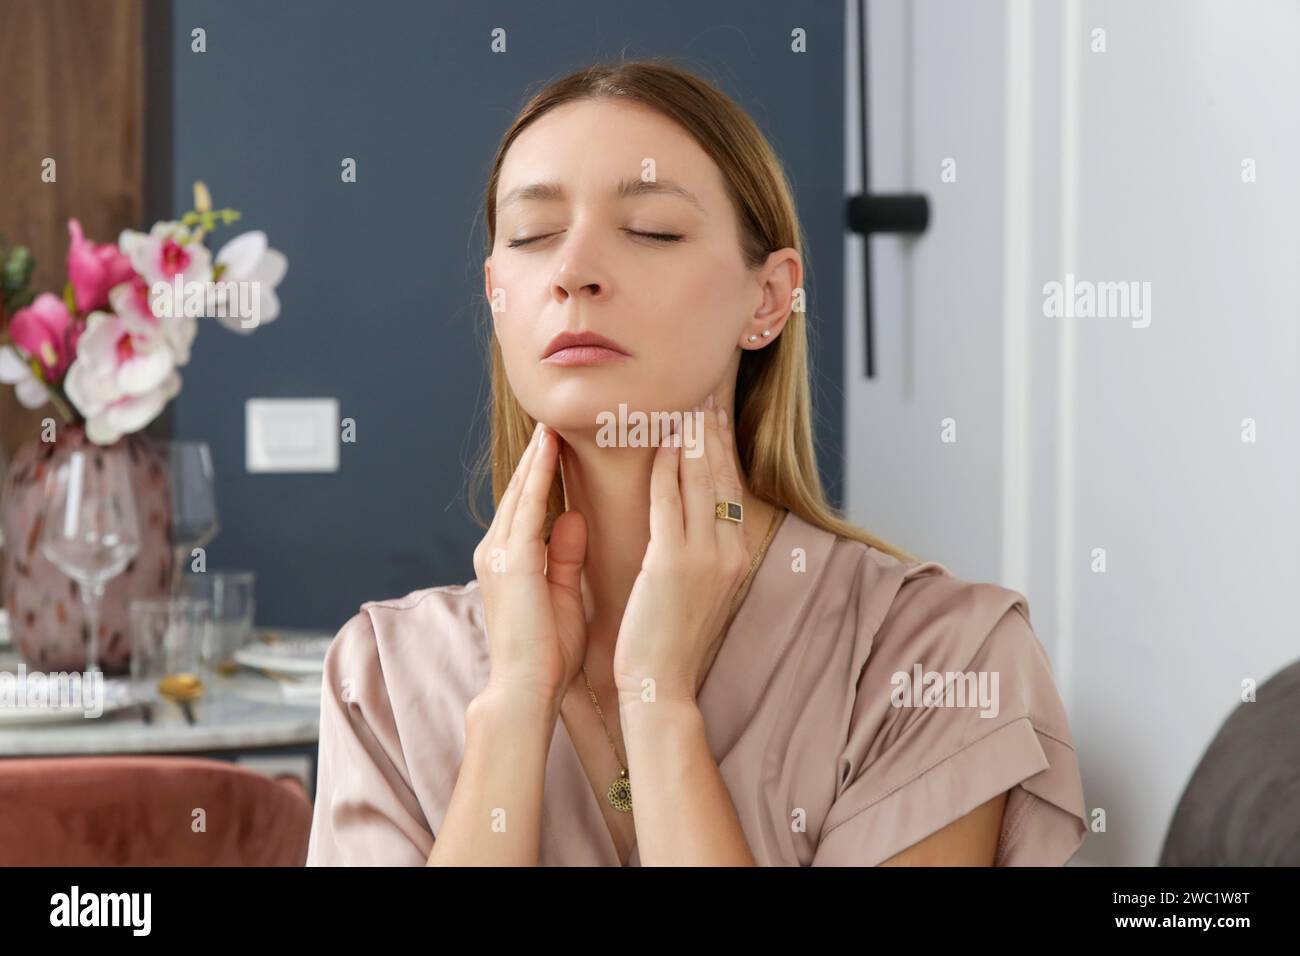 Femme caucasienne touchant sa gorge. Mal de gorge, rhume, grippe, amygdalite ou problème de glande thyroïde Banque D'Images